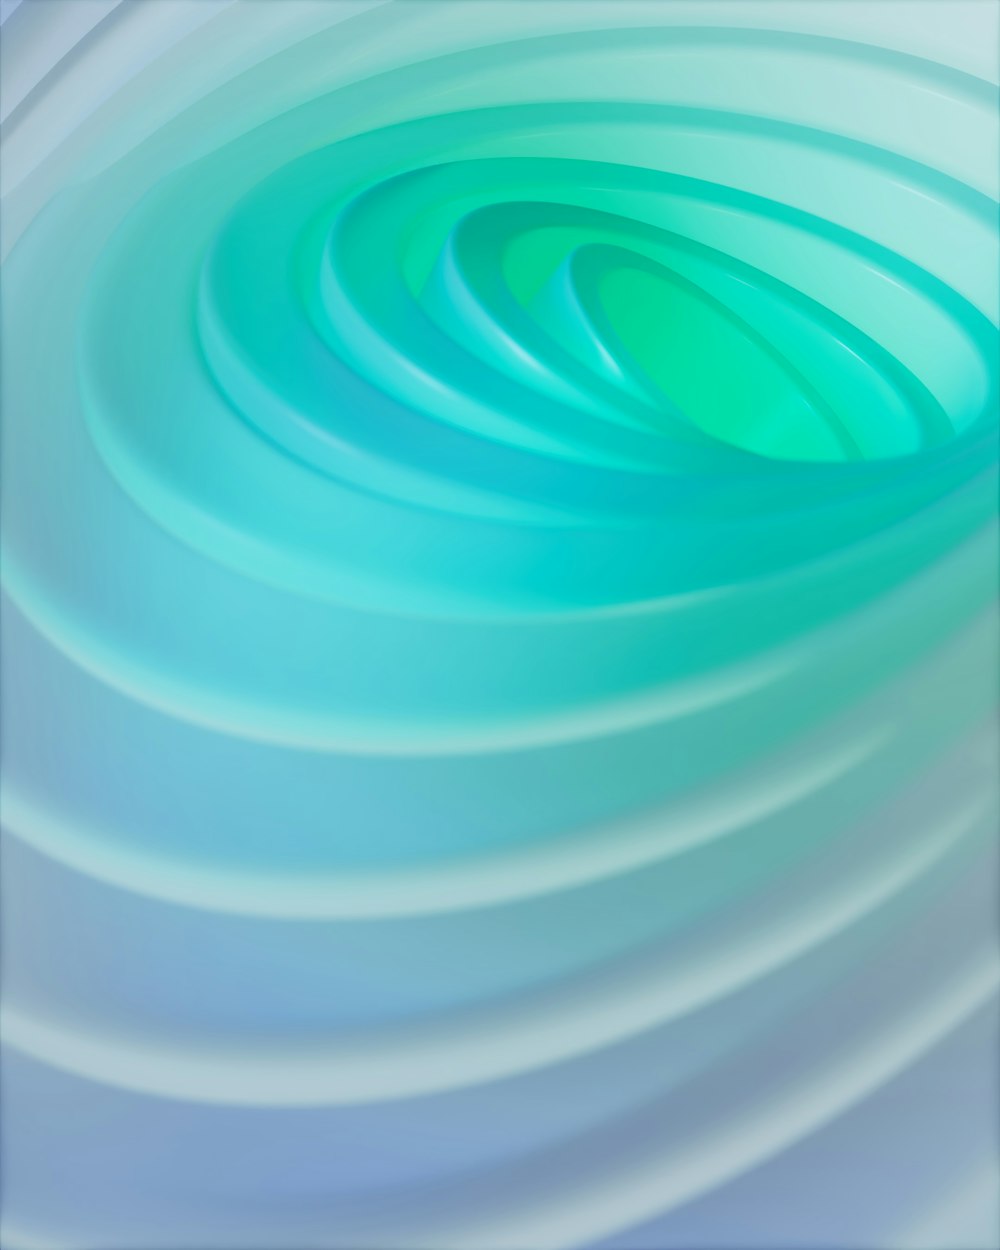 Una imagen de un remolino azul y verde